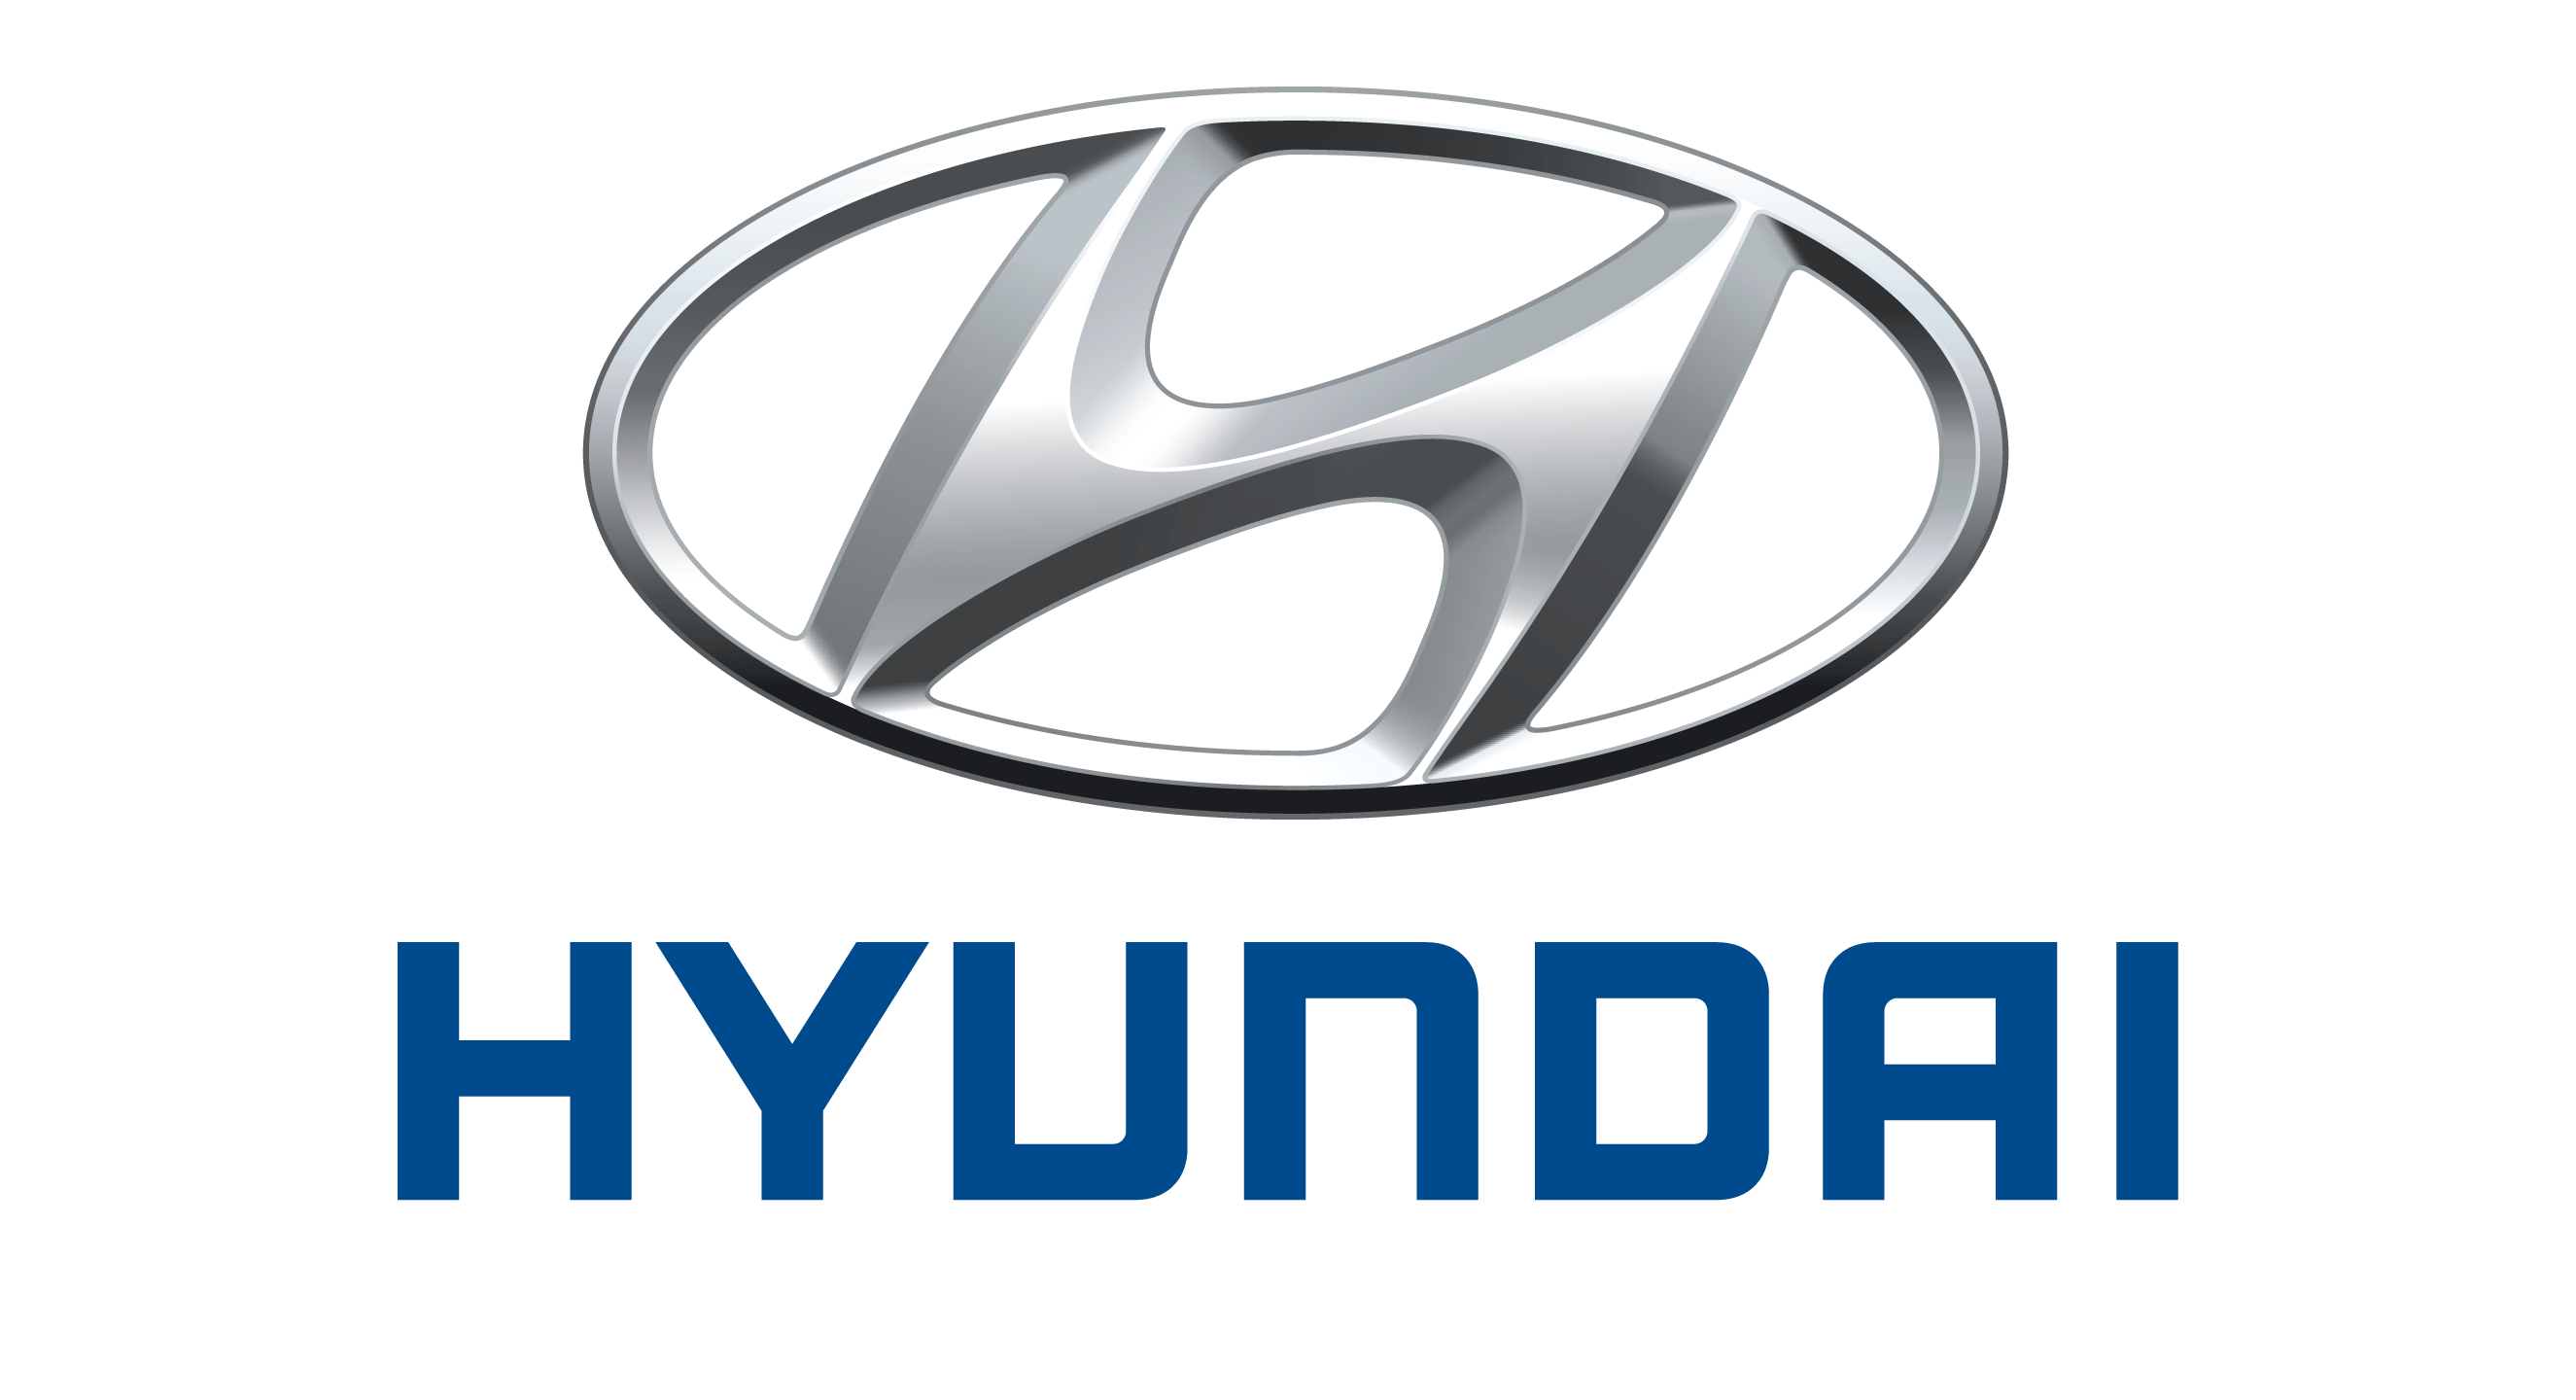 logo xe hyundai moi nhat - Giá xe Hyundai Ô Tô 2021 kèm ưu đãi cập nhật mới